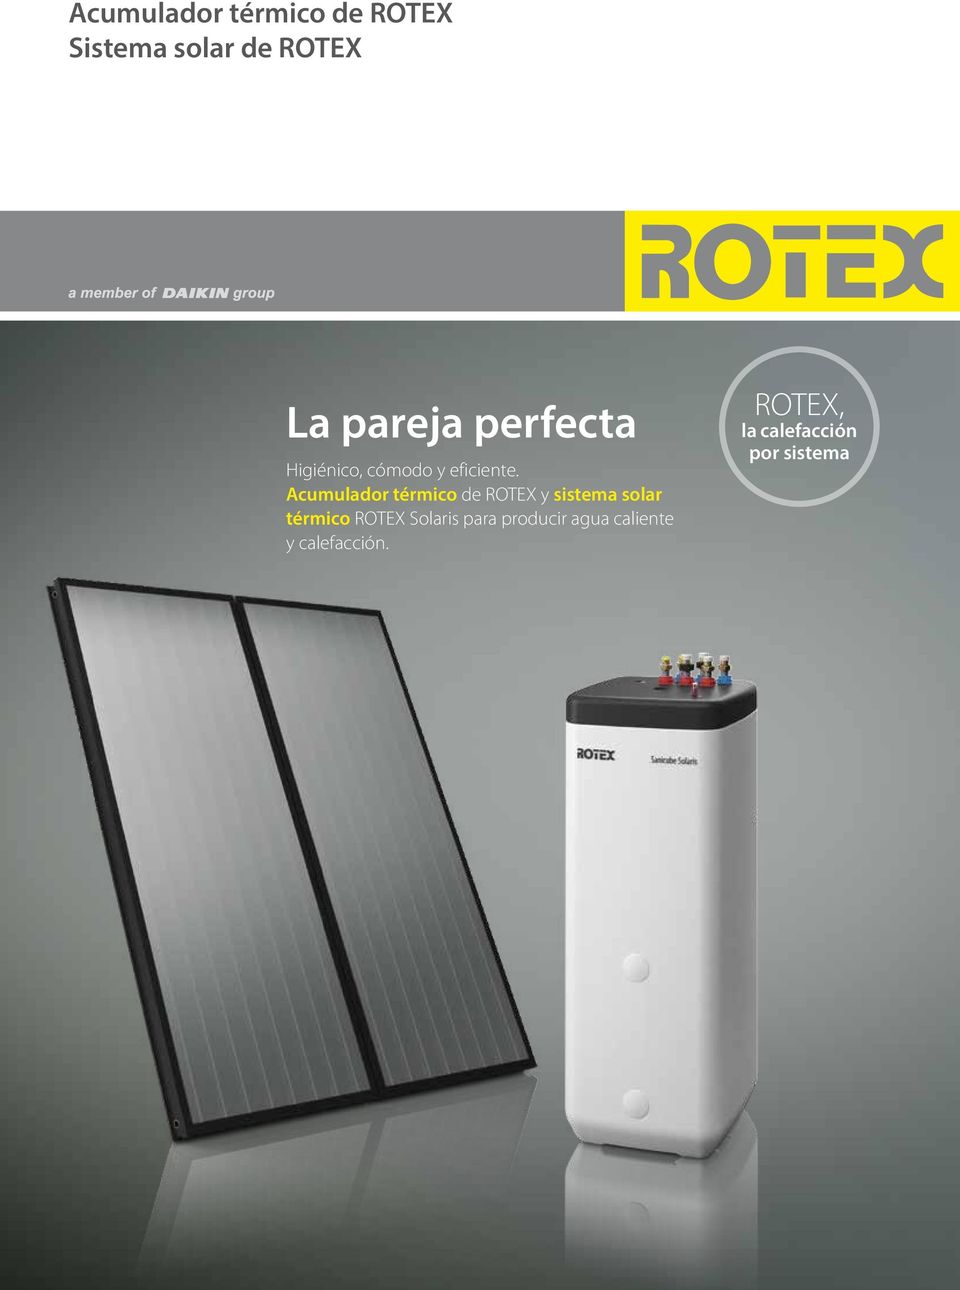 Acumulador térmico de ROTEX y sistema solar térmico ROTEX